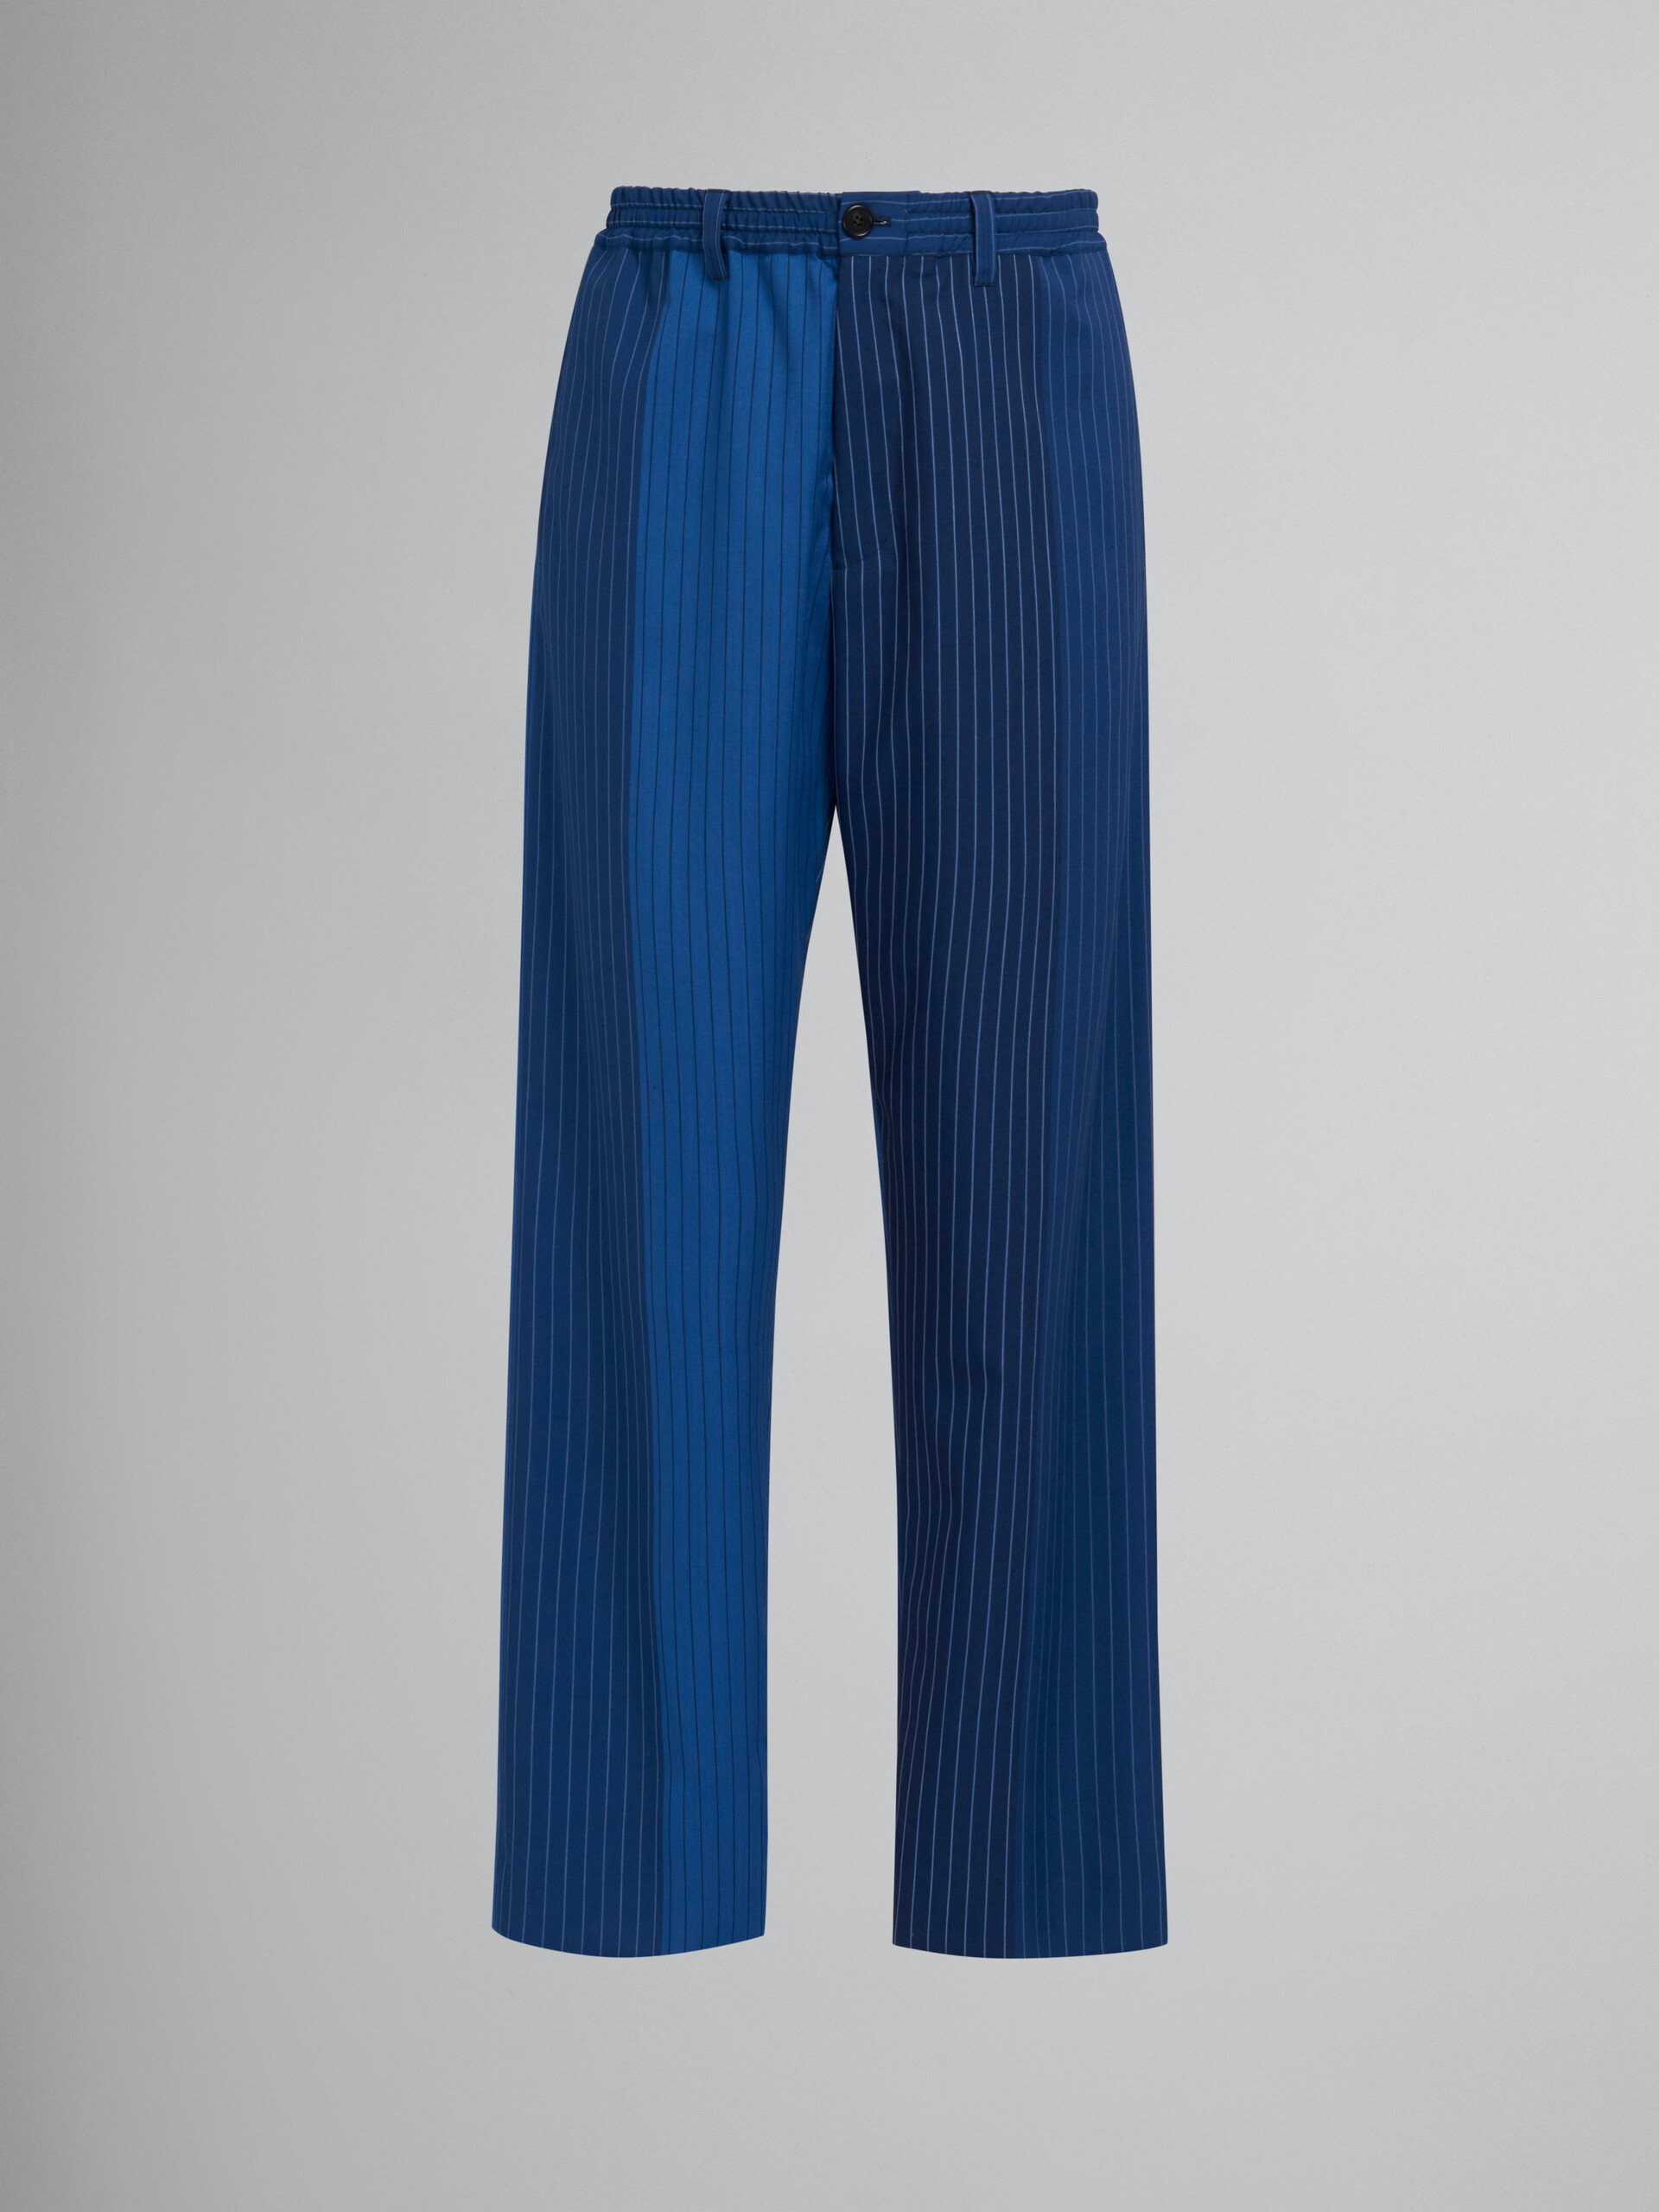 Pantalón de jogging azul degradado con raya diplomática - Pantalones - Image 1